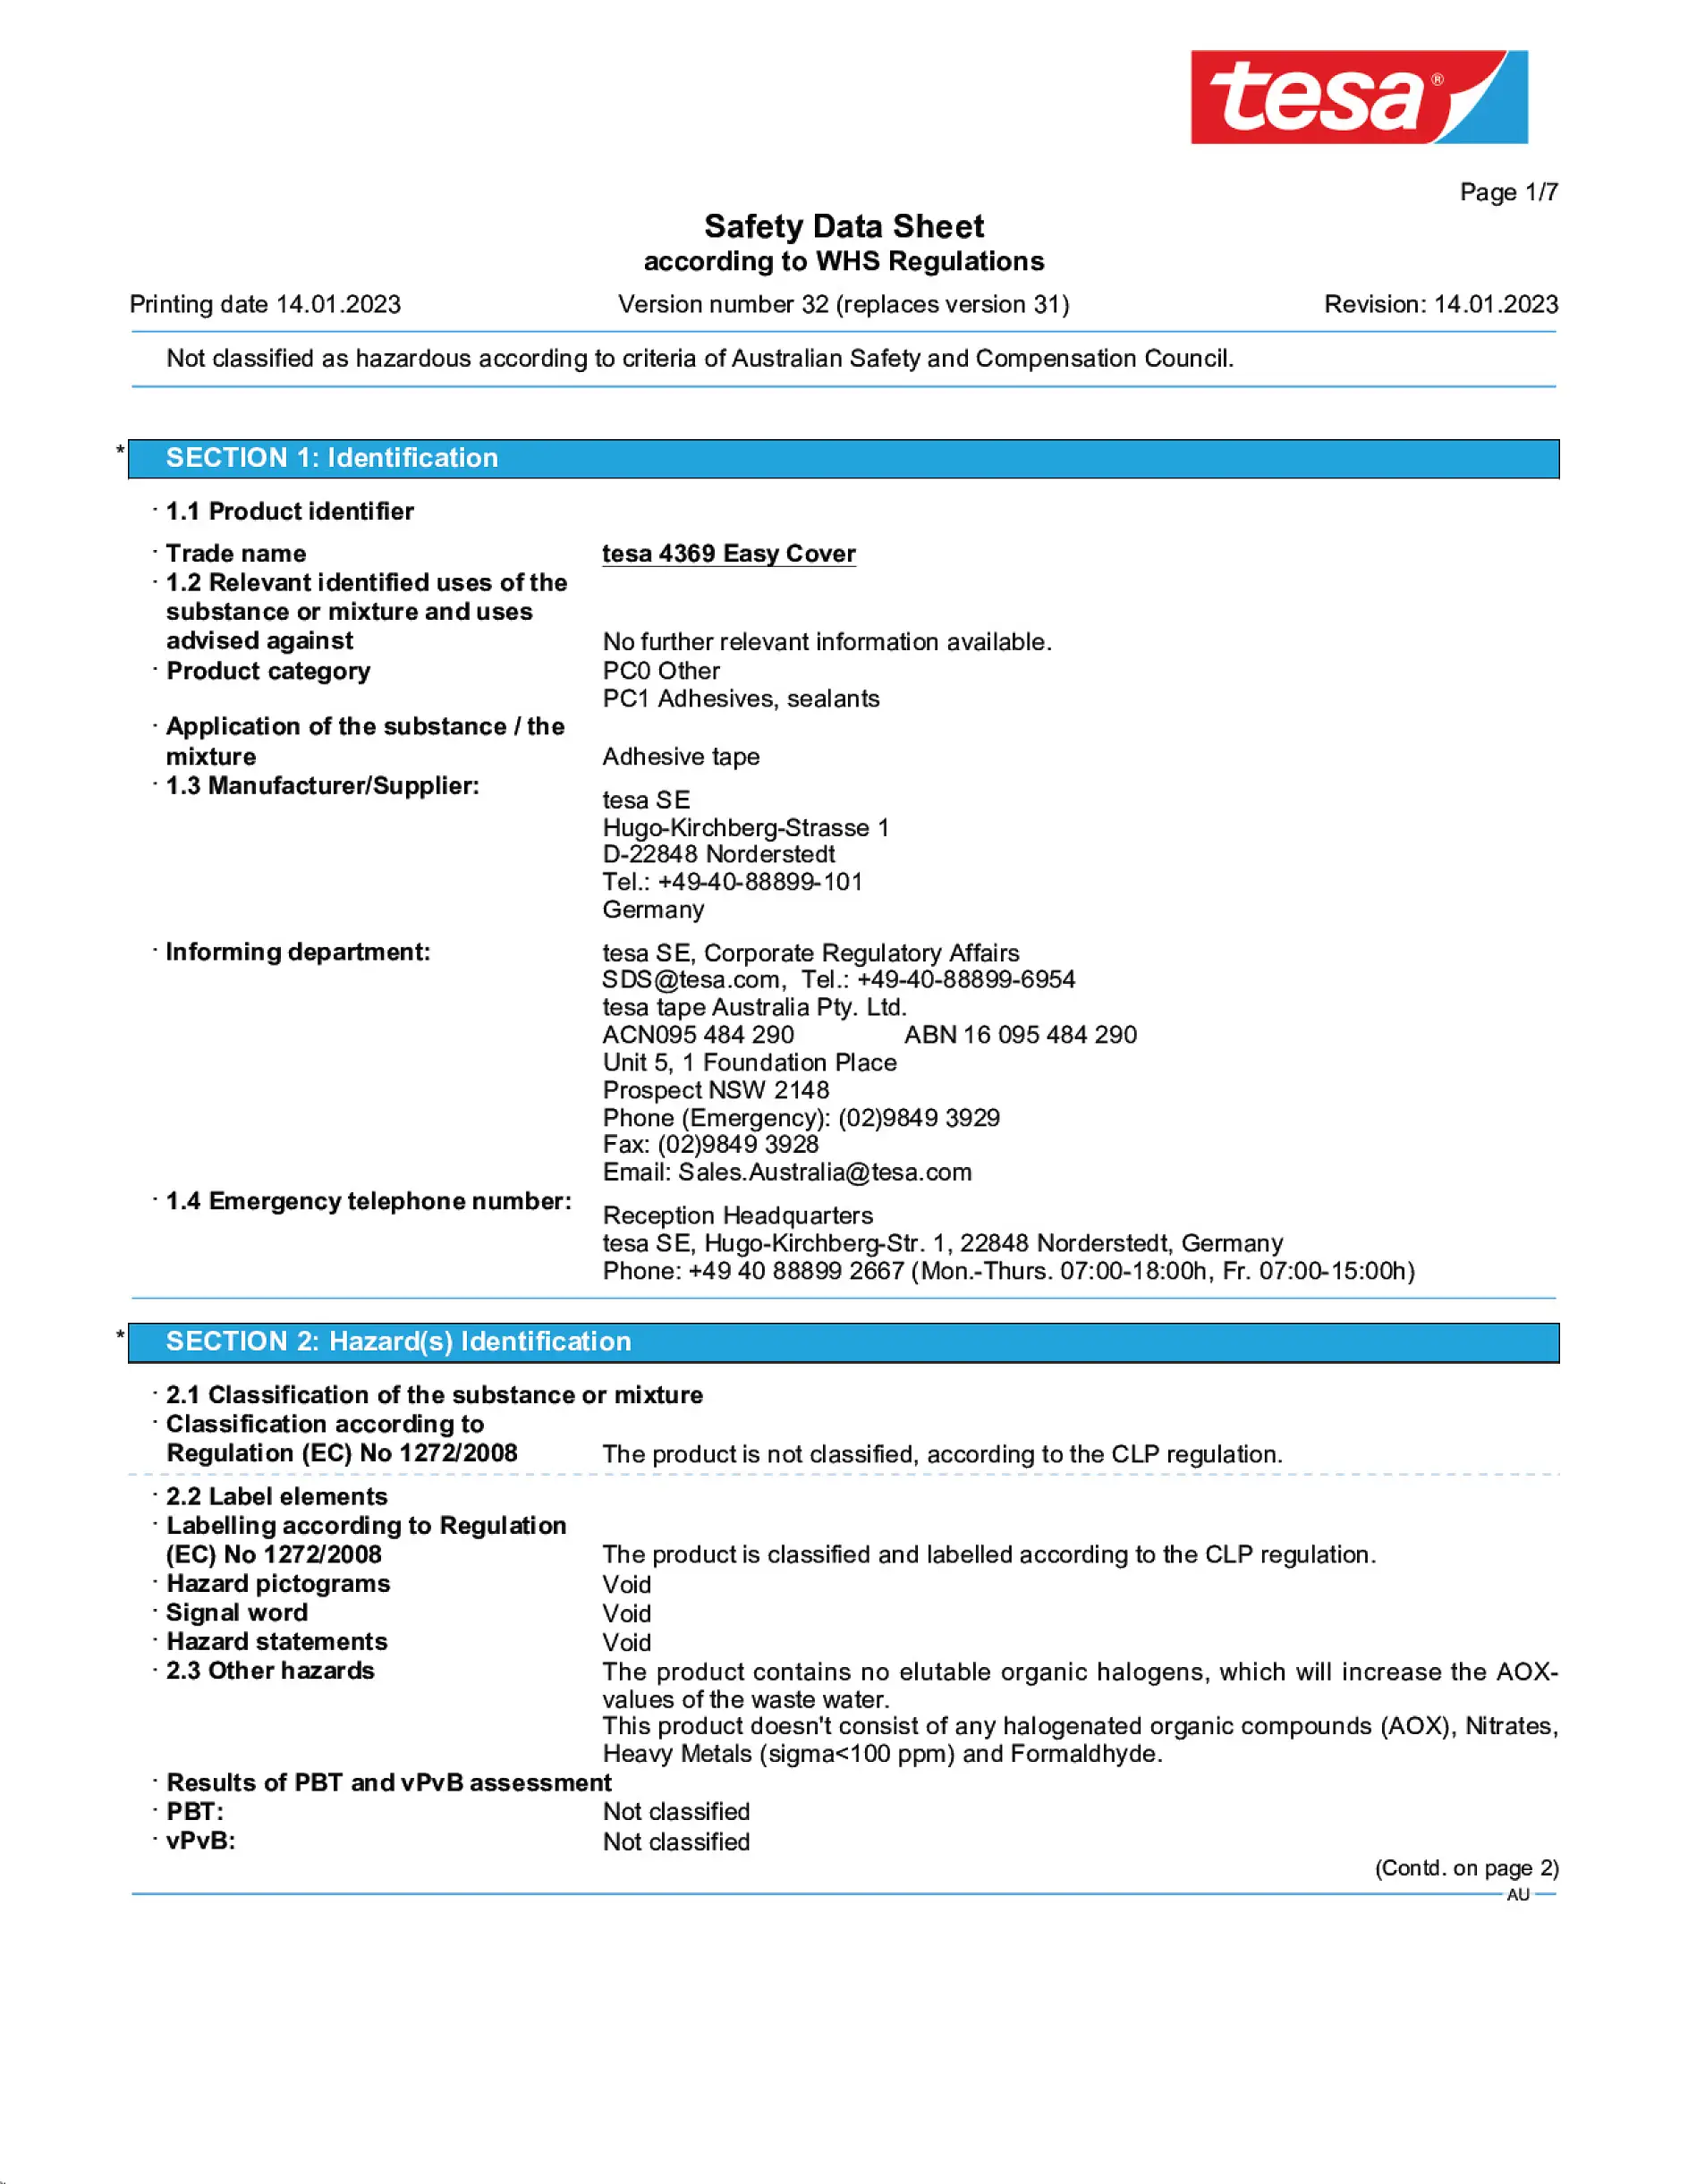 Safety data sheet_tesa® Professional 04369_en-AU_v32